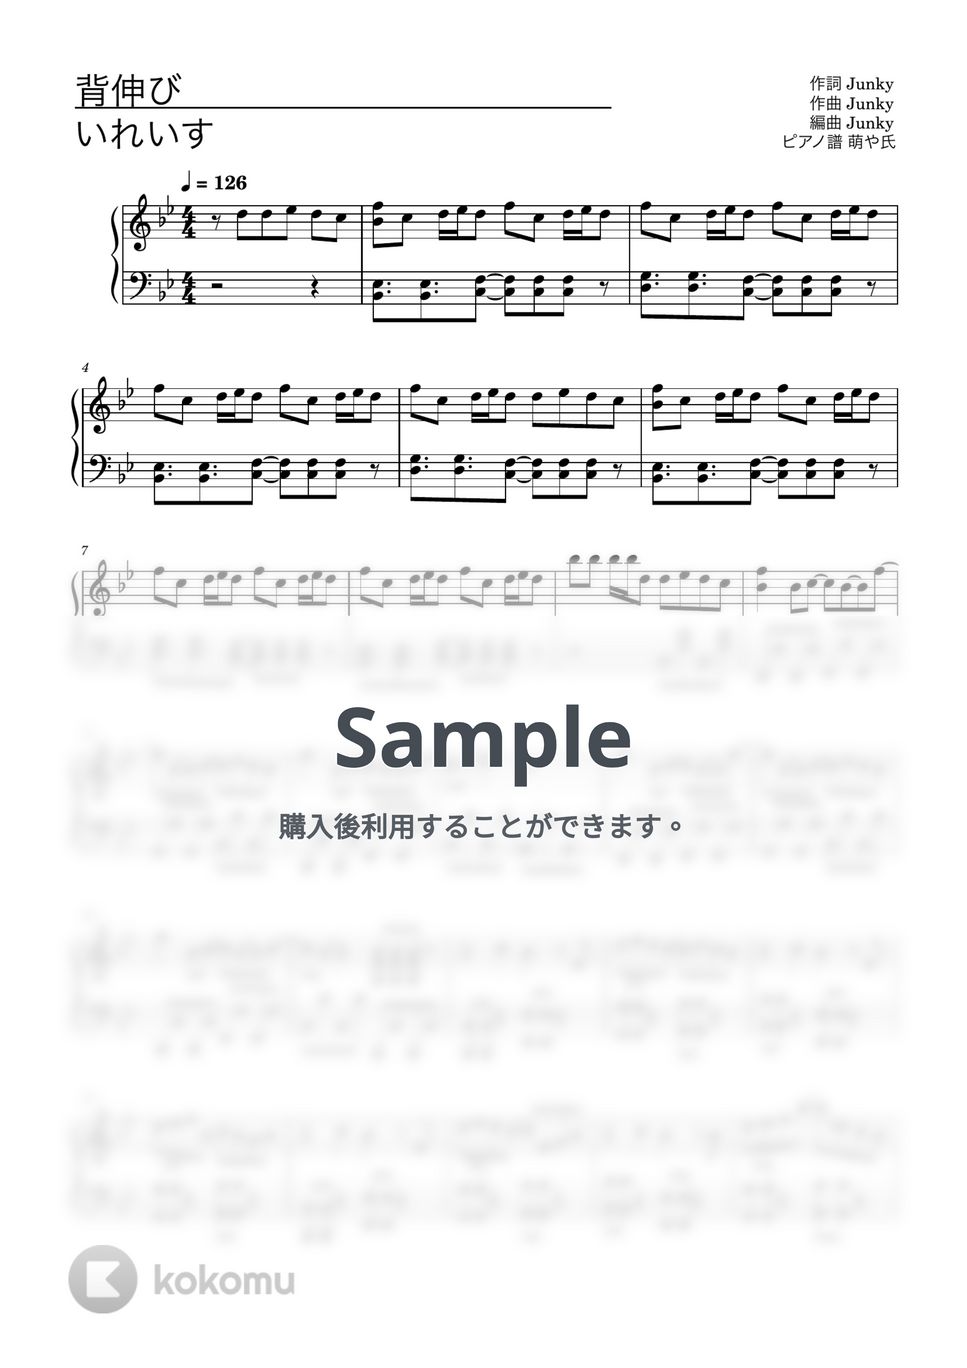 いれいす - 背伸び (ピアノソロ譜) by 萌や氏